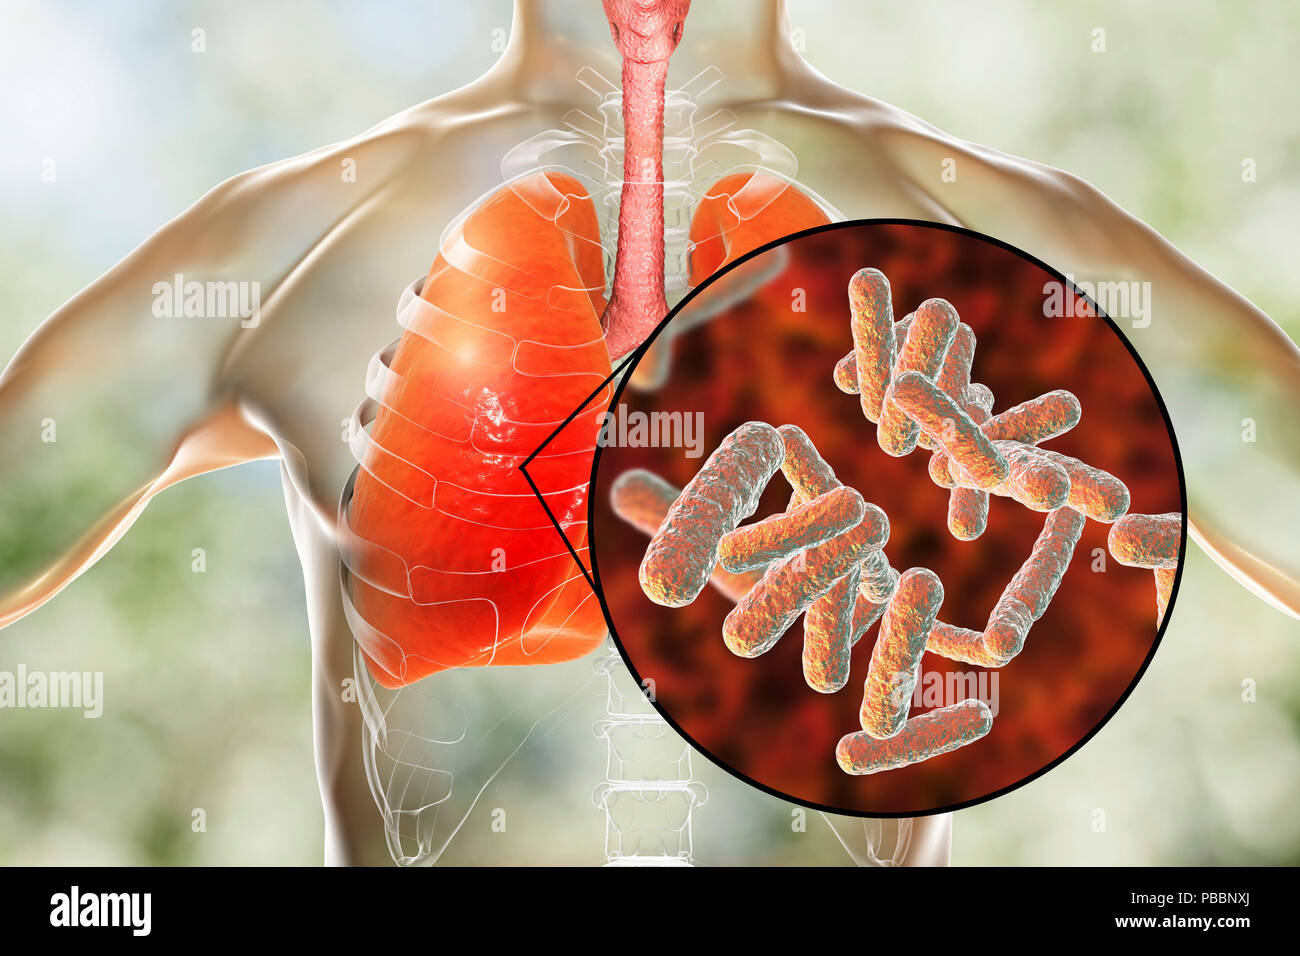 Bakterielle Pneumonie, konzeptionelle Darstellung. Die menschliche Lunge und Nahaufnahme von Bakterien, einer der Erreger der Lungenentzündung. Stockfoto